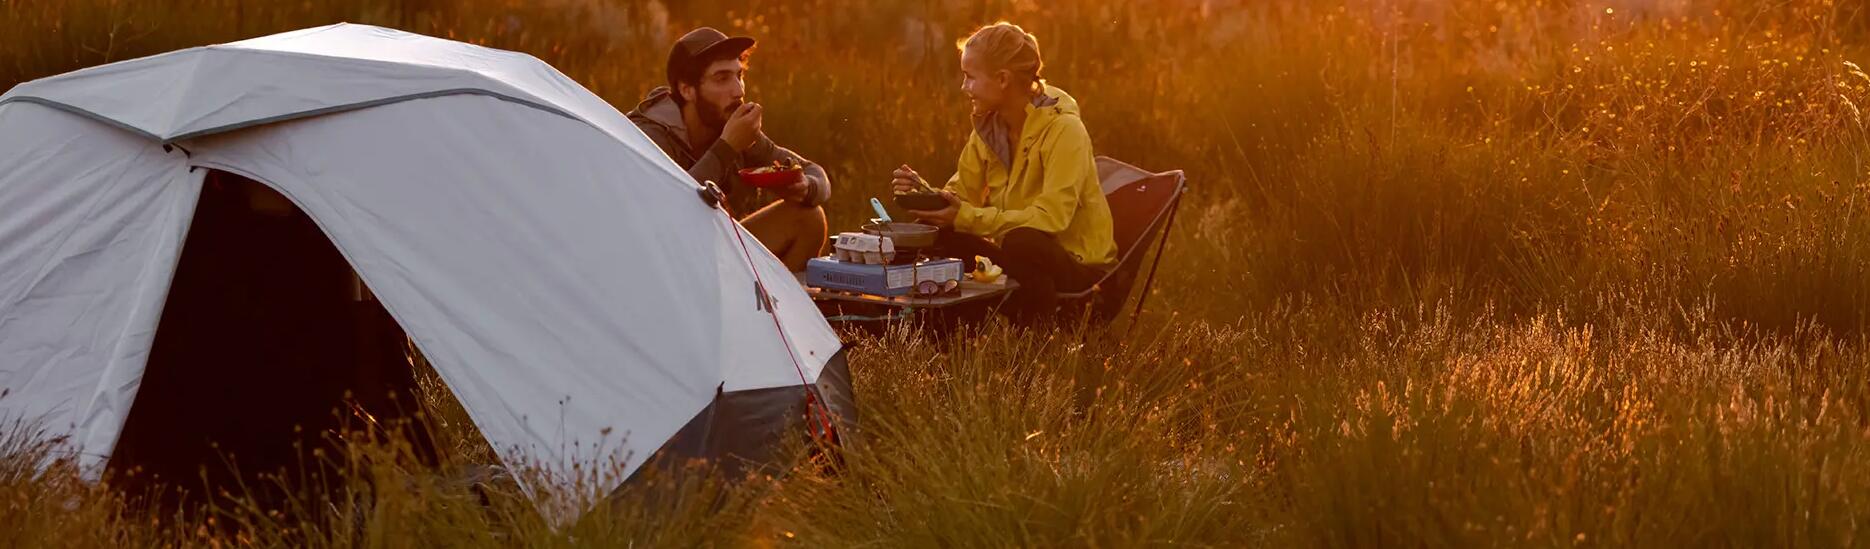 Comment choisir une assise de camping - titre